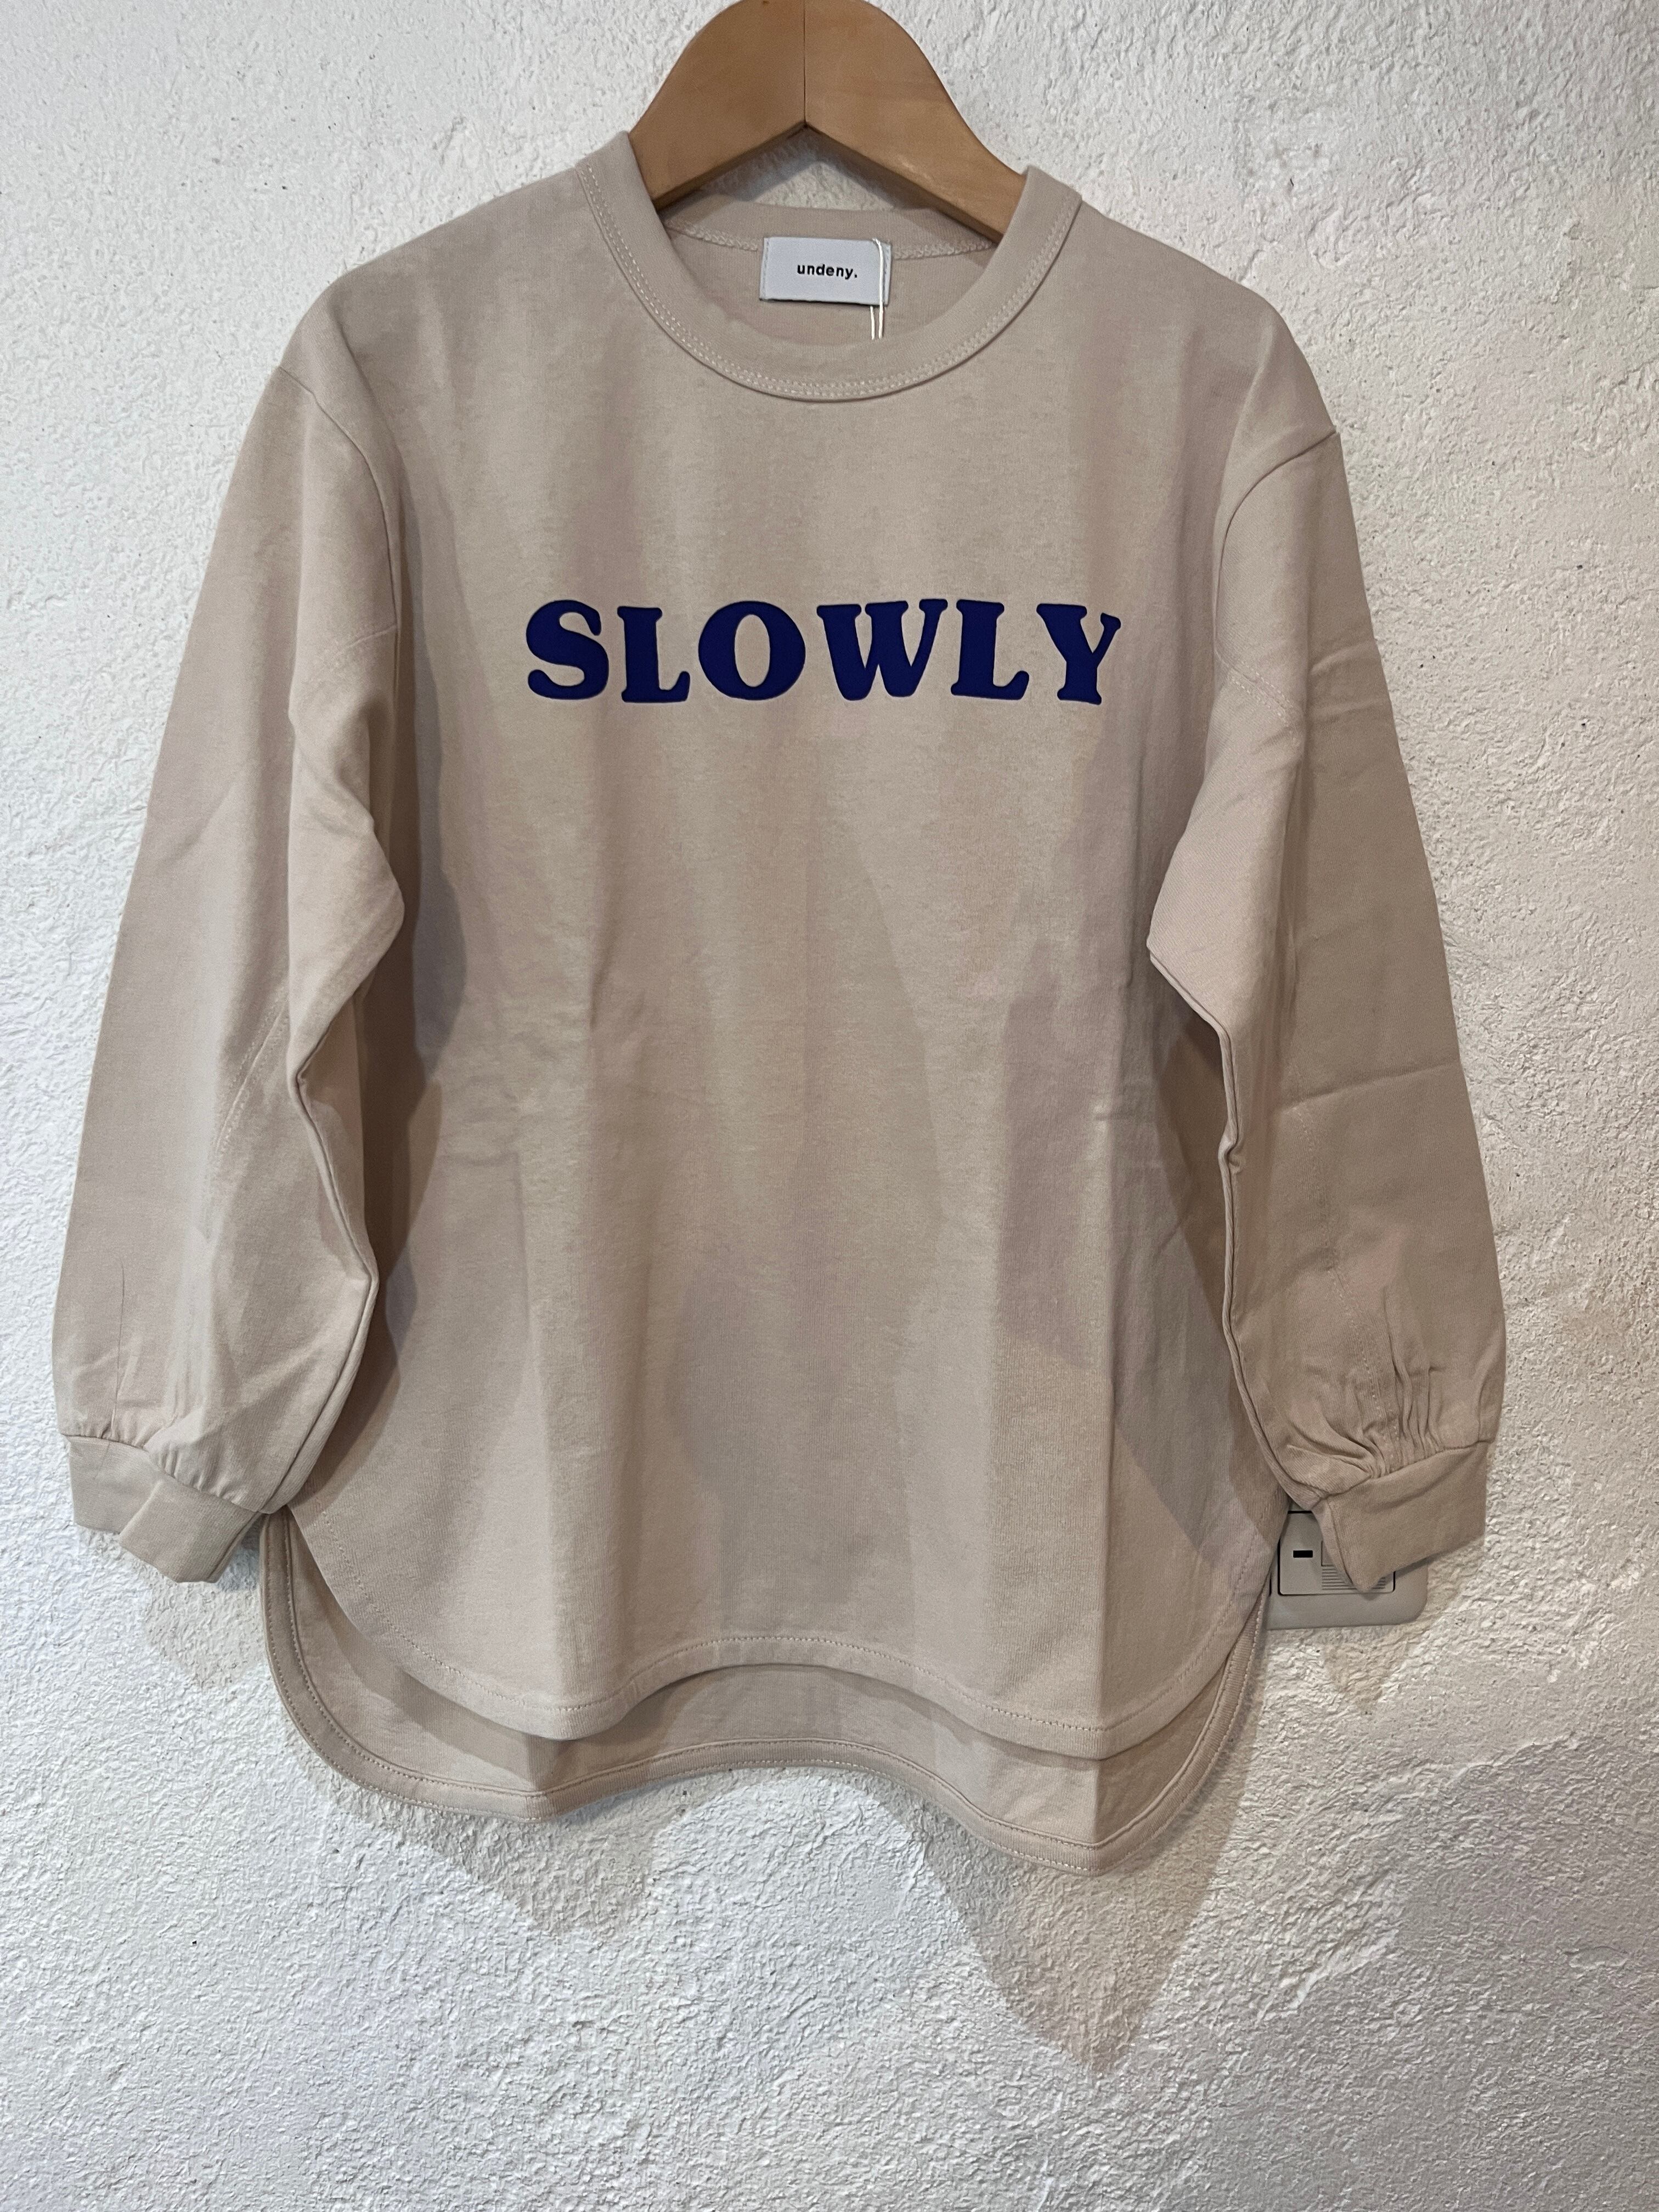 KIDS:undeny /　SLOWLY Tシャツ110-160㎝